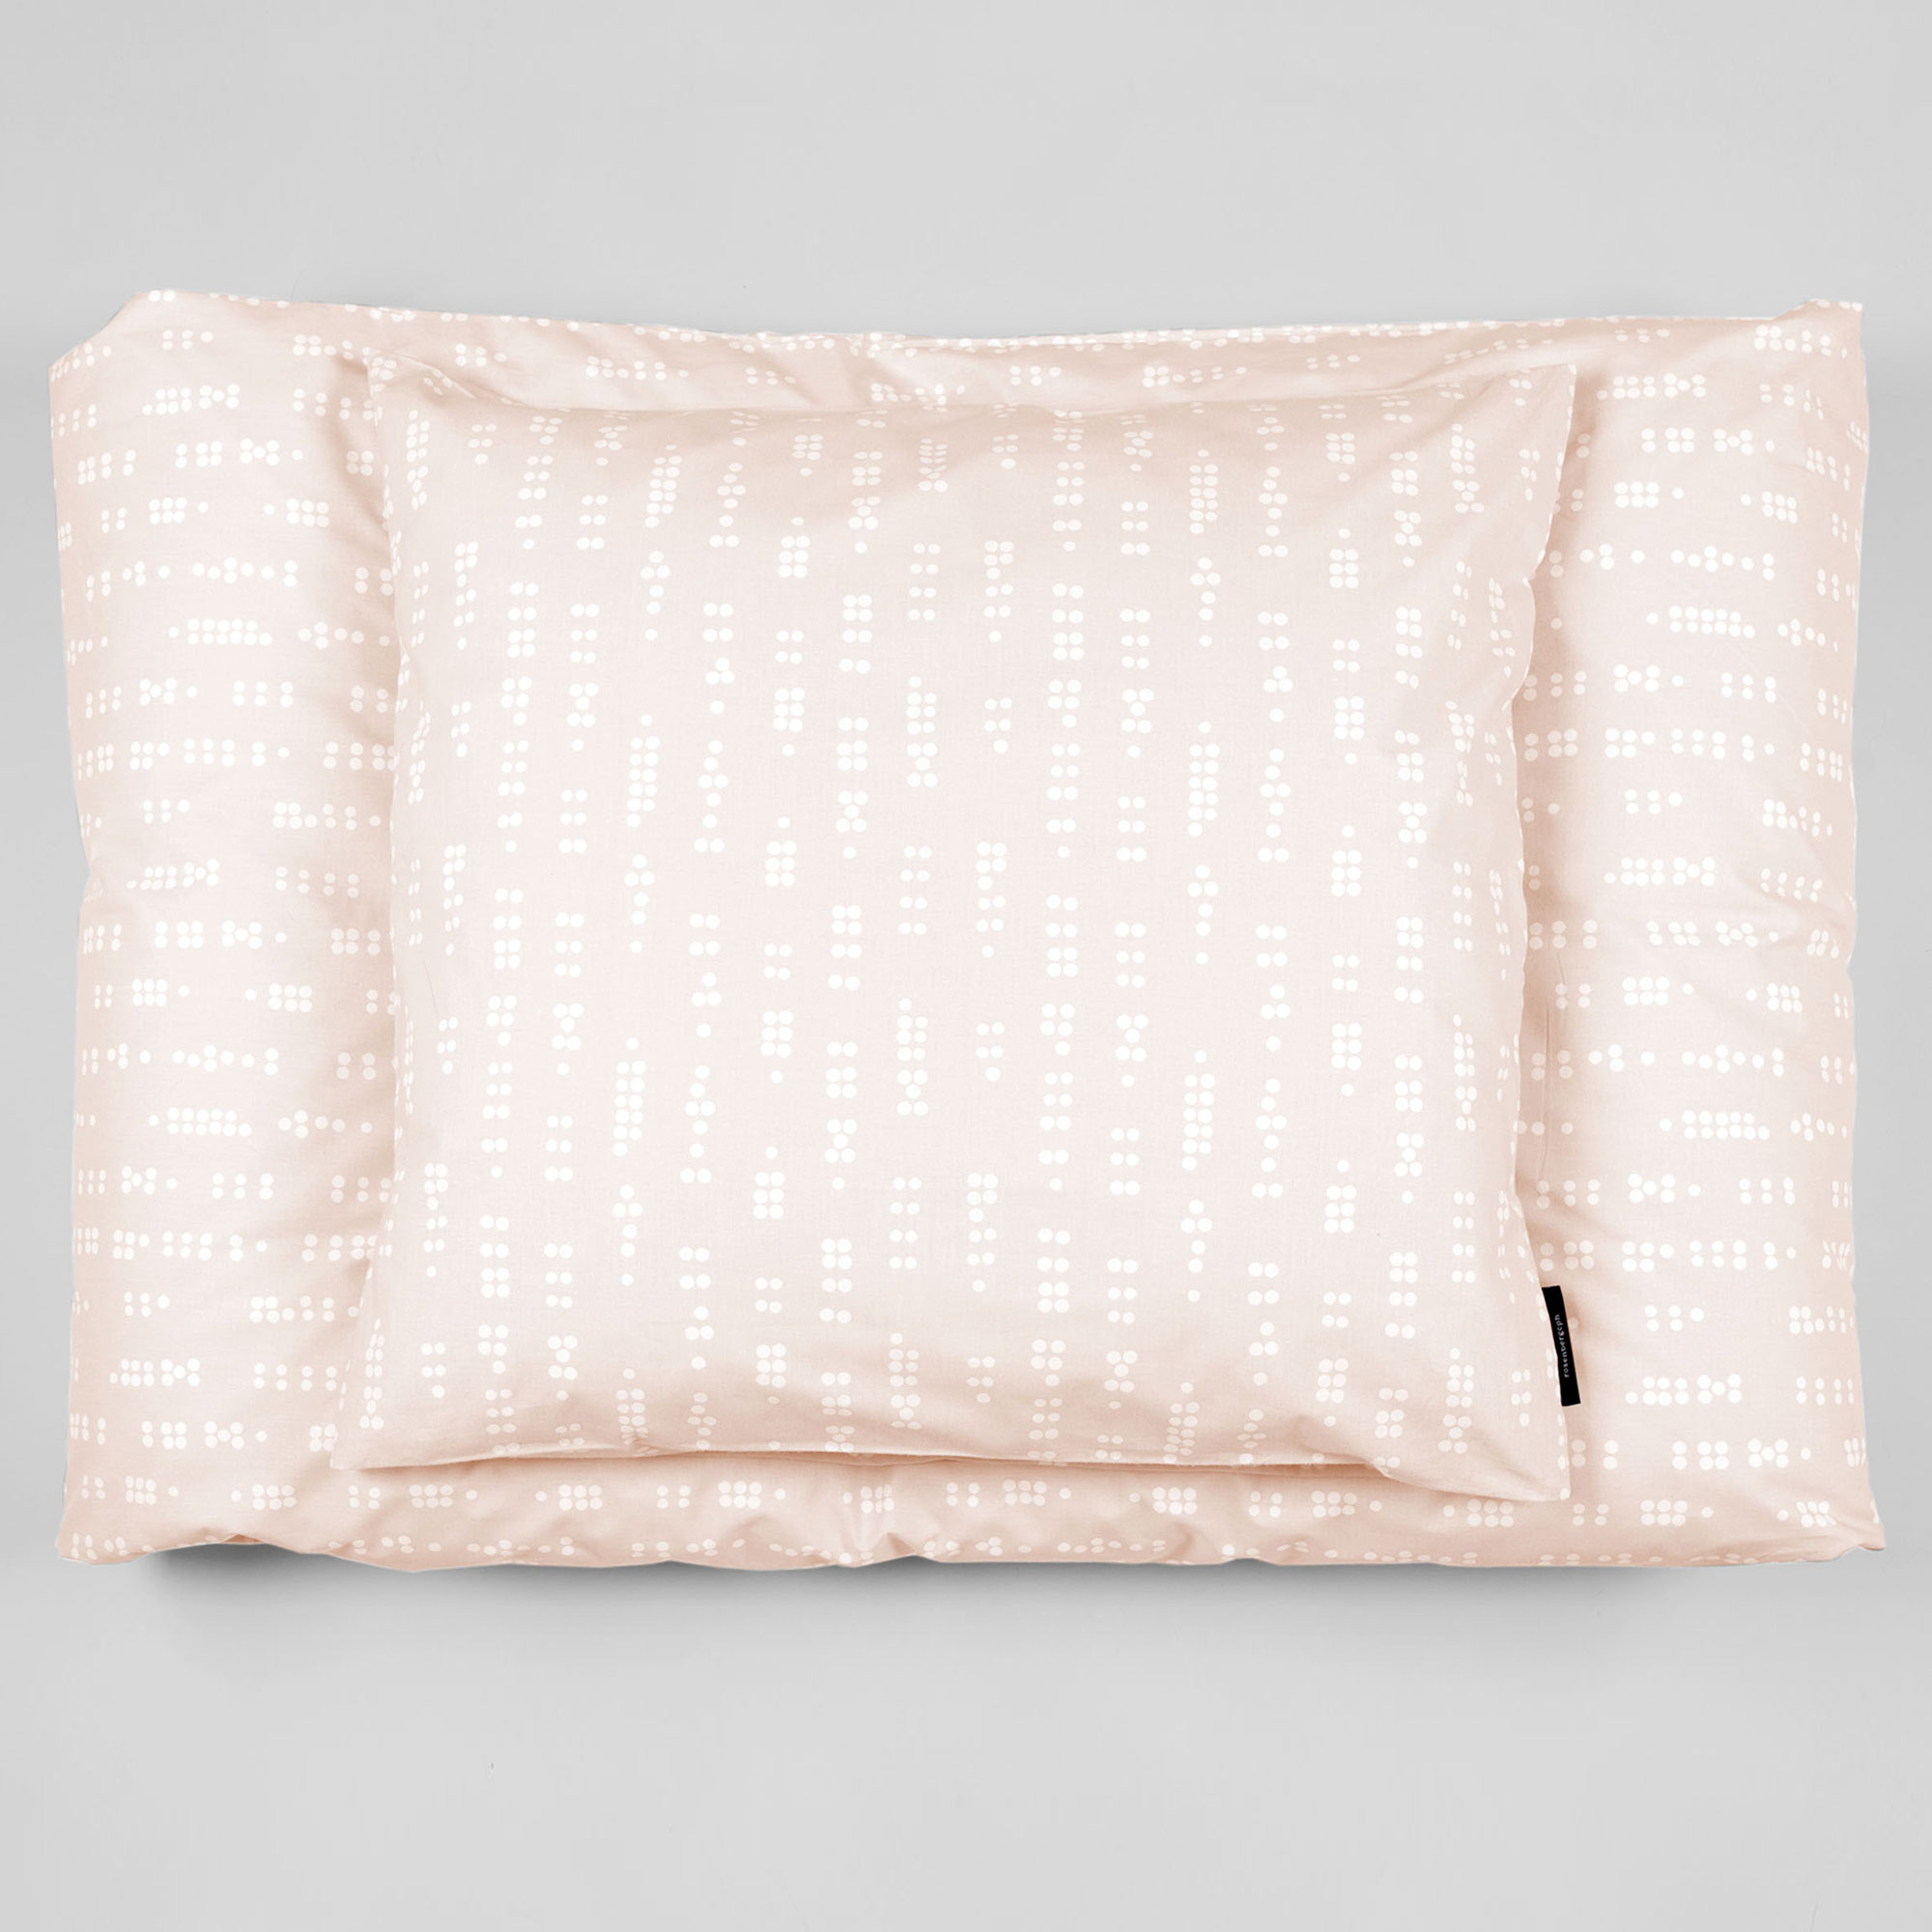 Bed linen, Dot Sea Shell, organic cotton design by Anne Rosenberg, RosenbergCph